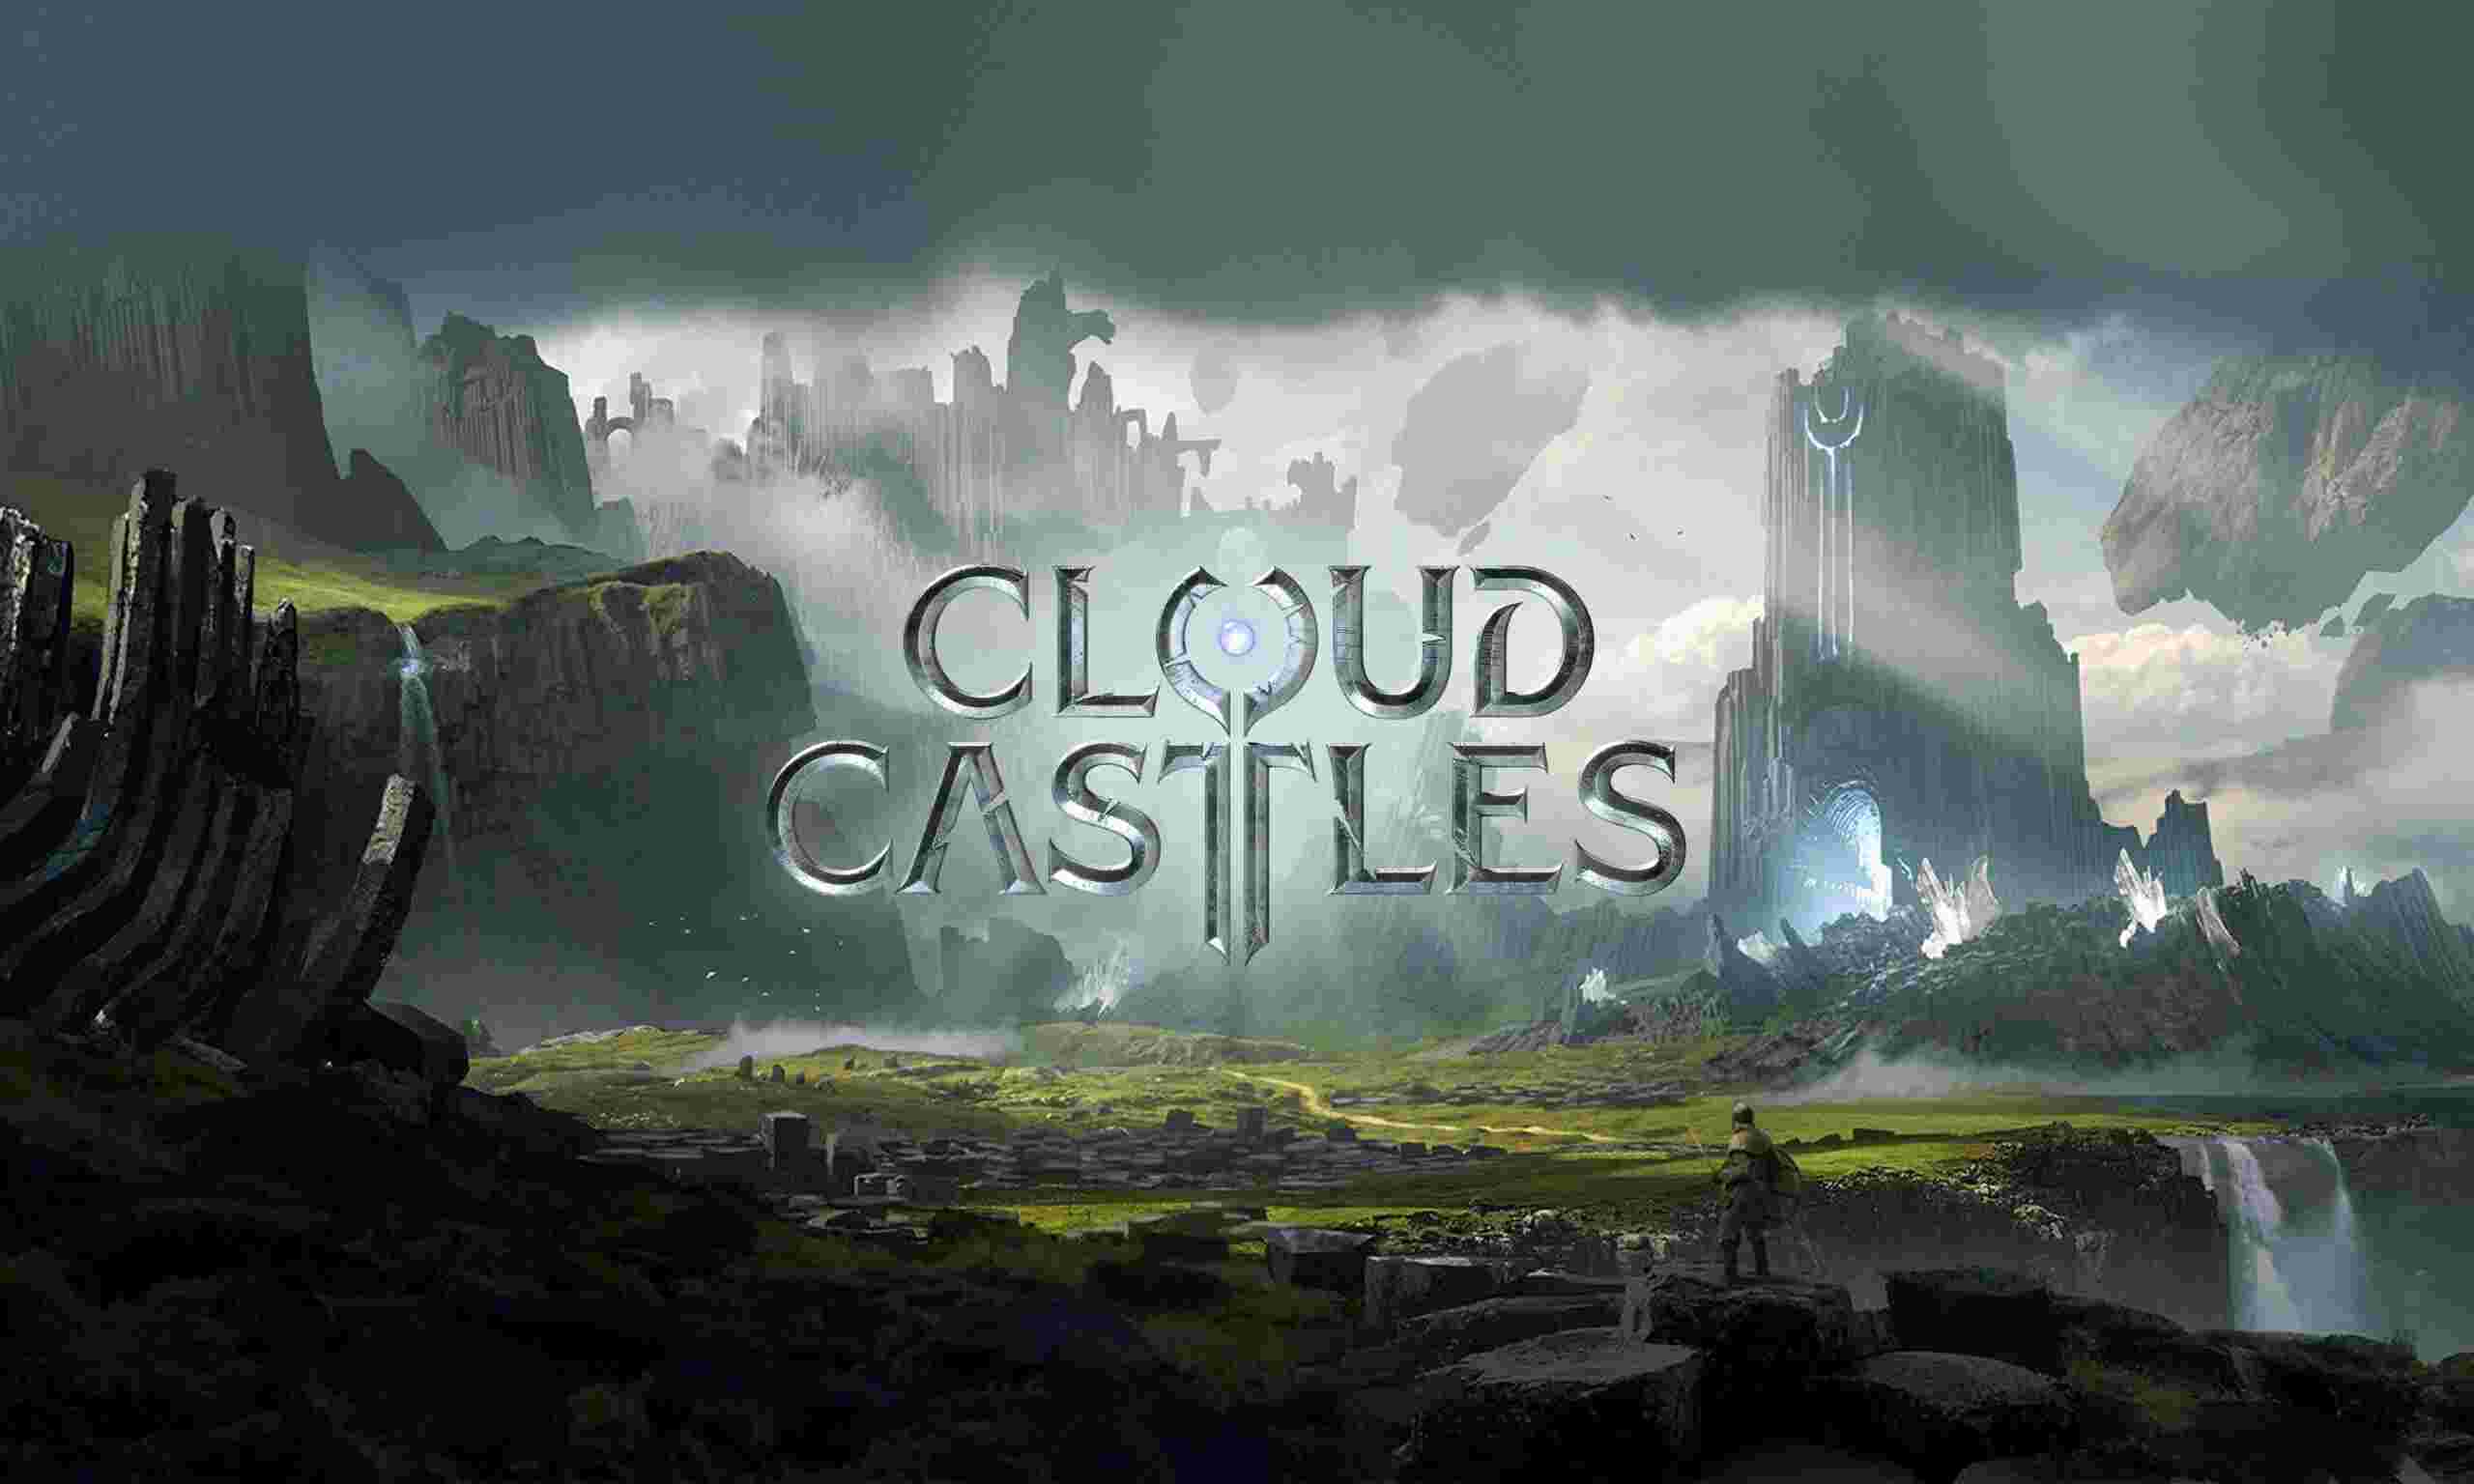 Cloud Castles - Actiestrategiespel, UE 5 en Web3 Blockchain